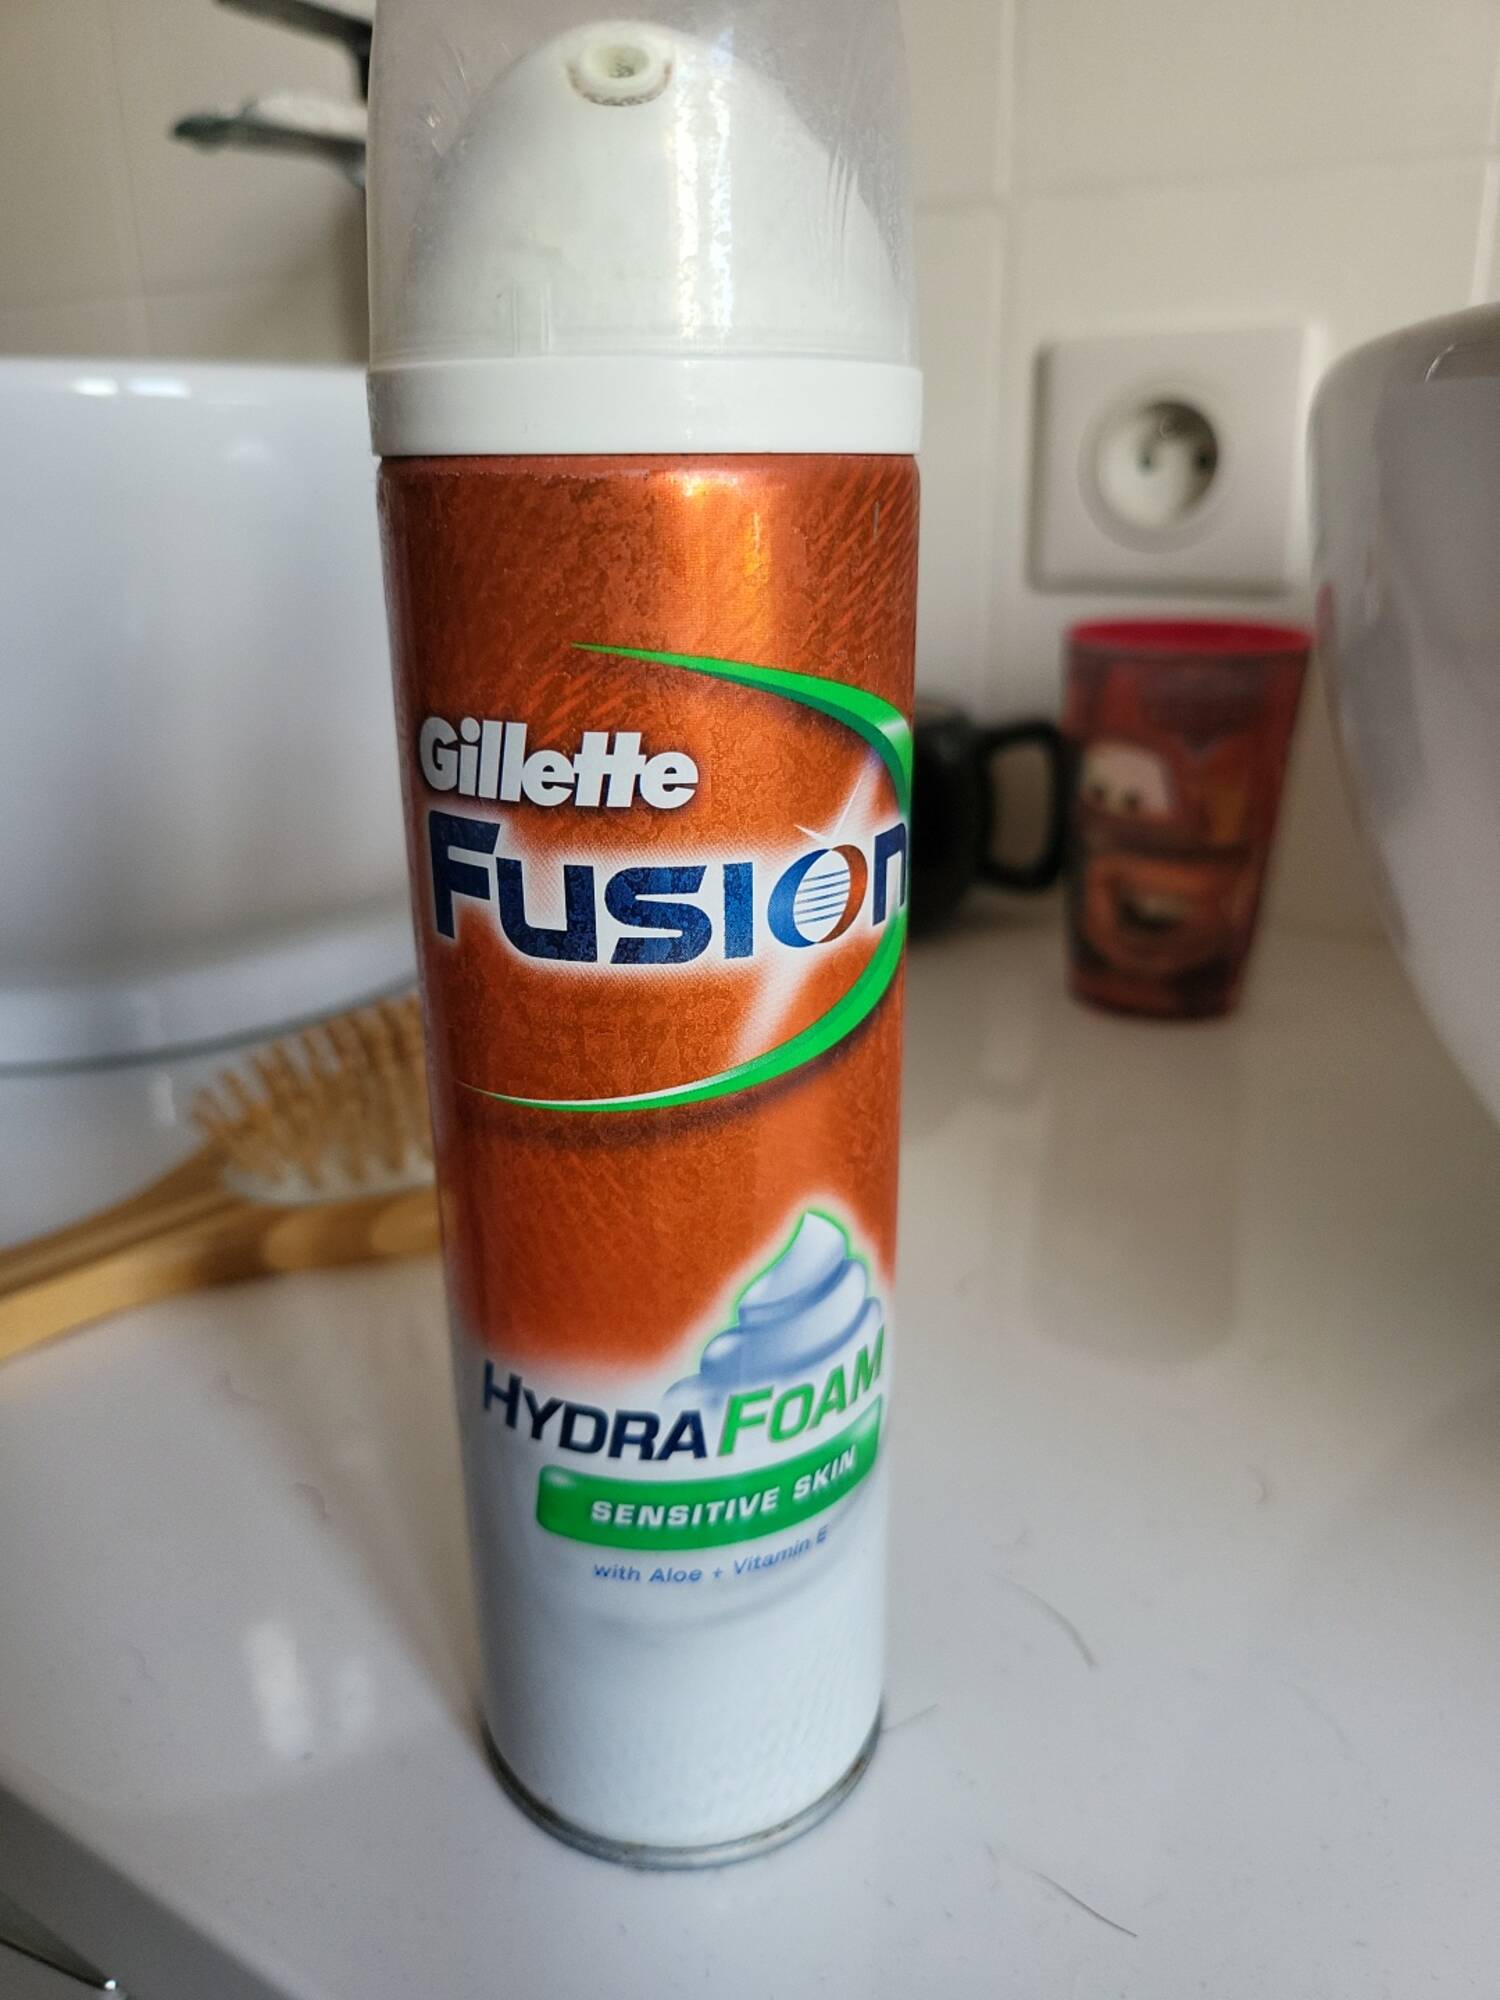 GILLETTE - Fusion - Hydra foam